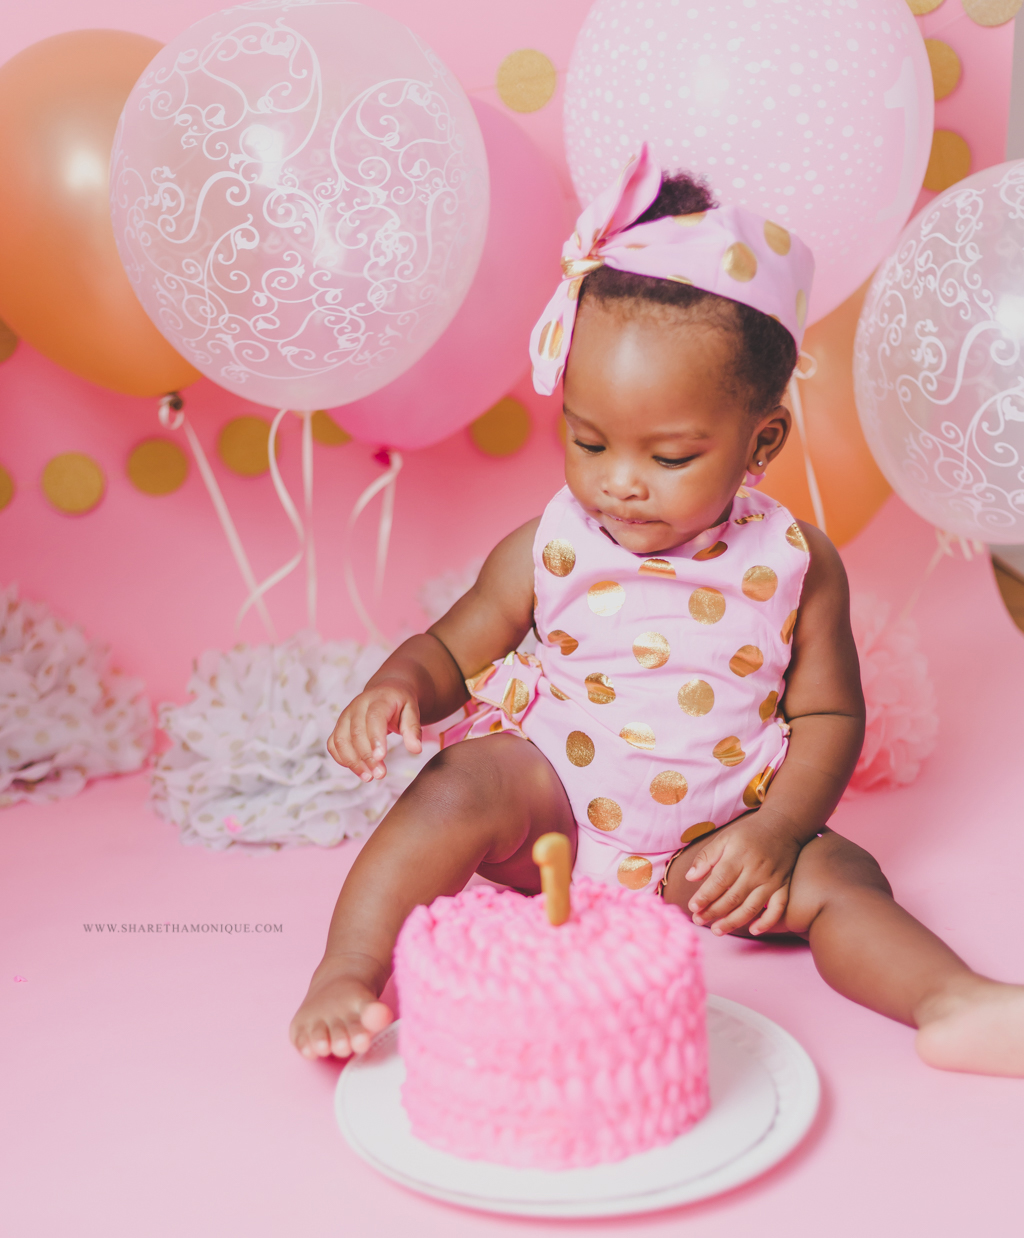 Charlotte Baby Cake Smash - One Year Birthday-11.jpg